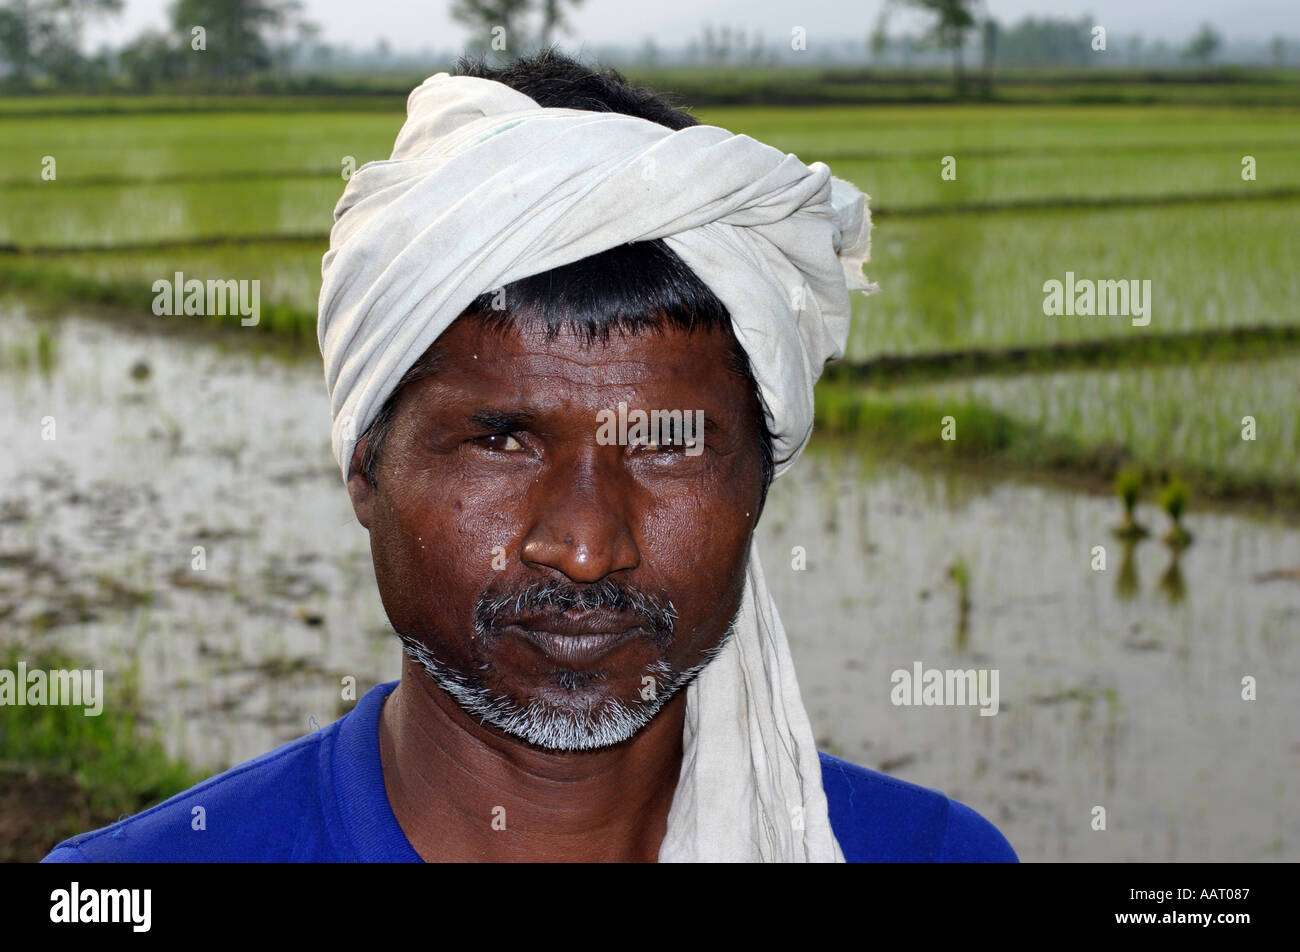 La planteuse de riz népalais à Chitwan Banque D'Images